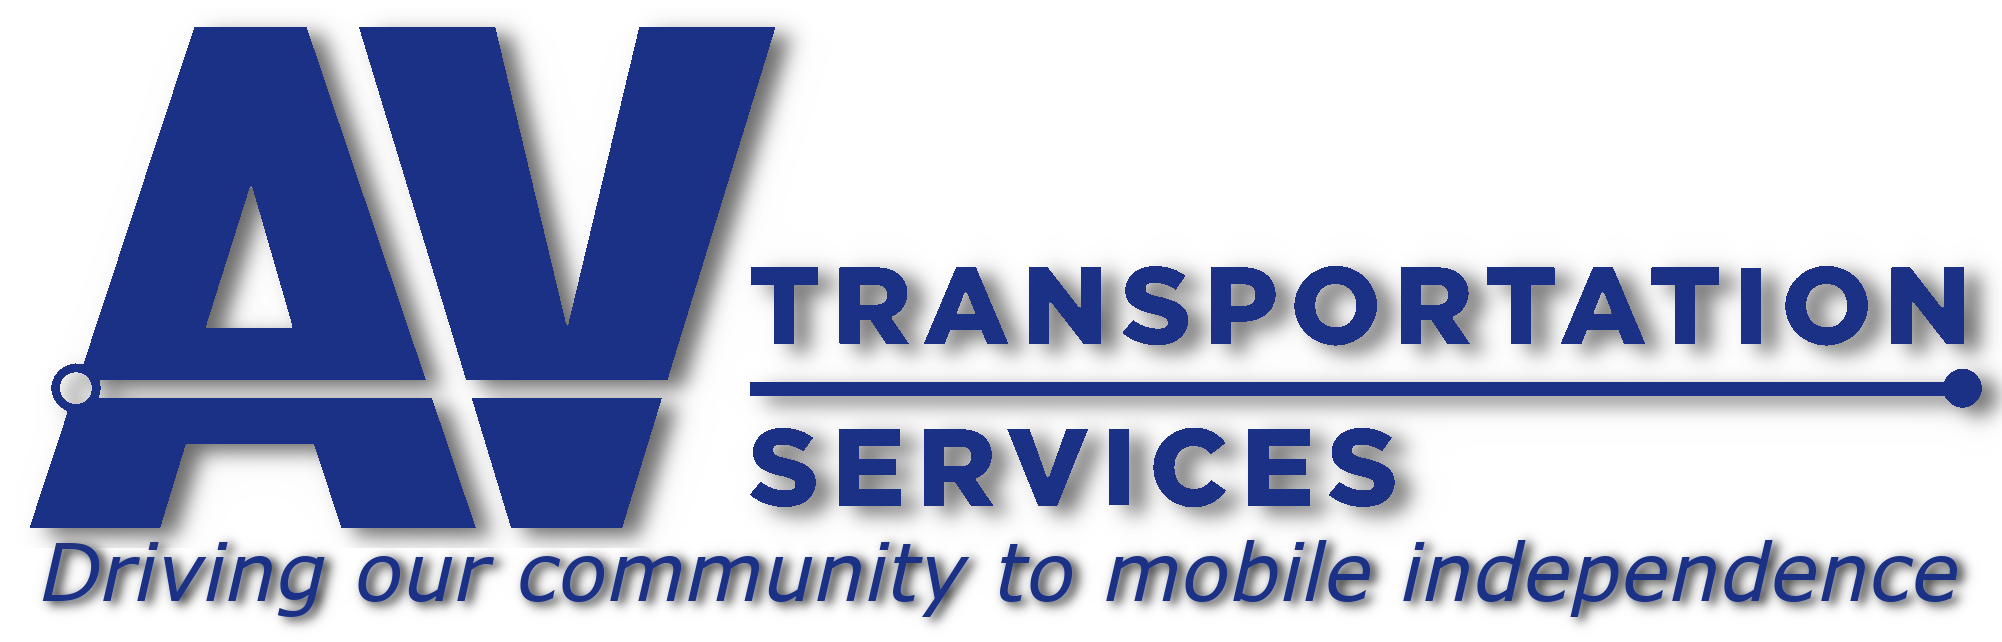 AV Transportation Services logo